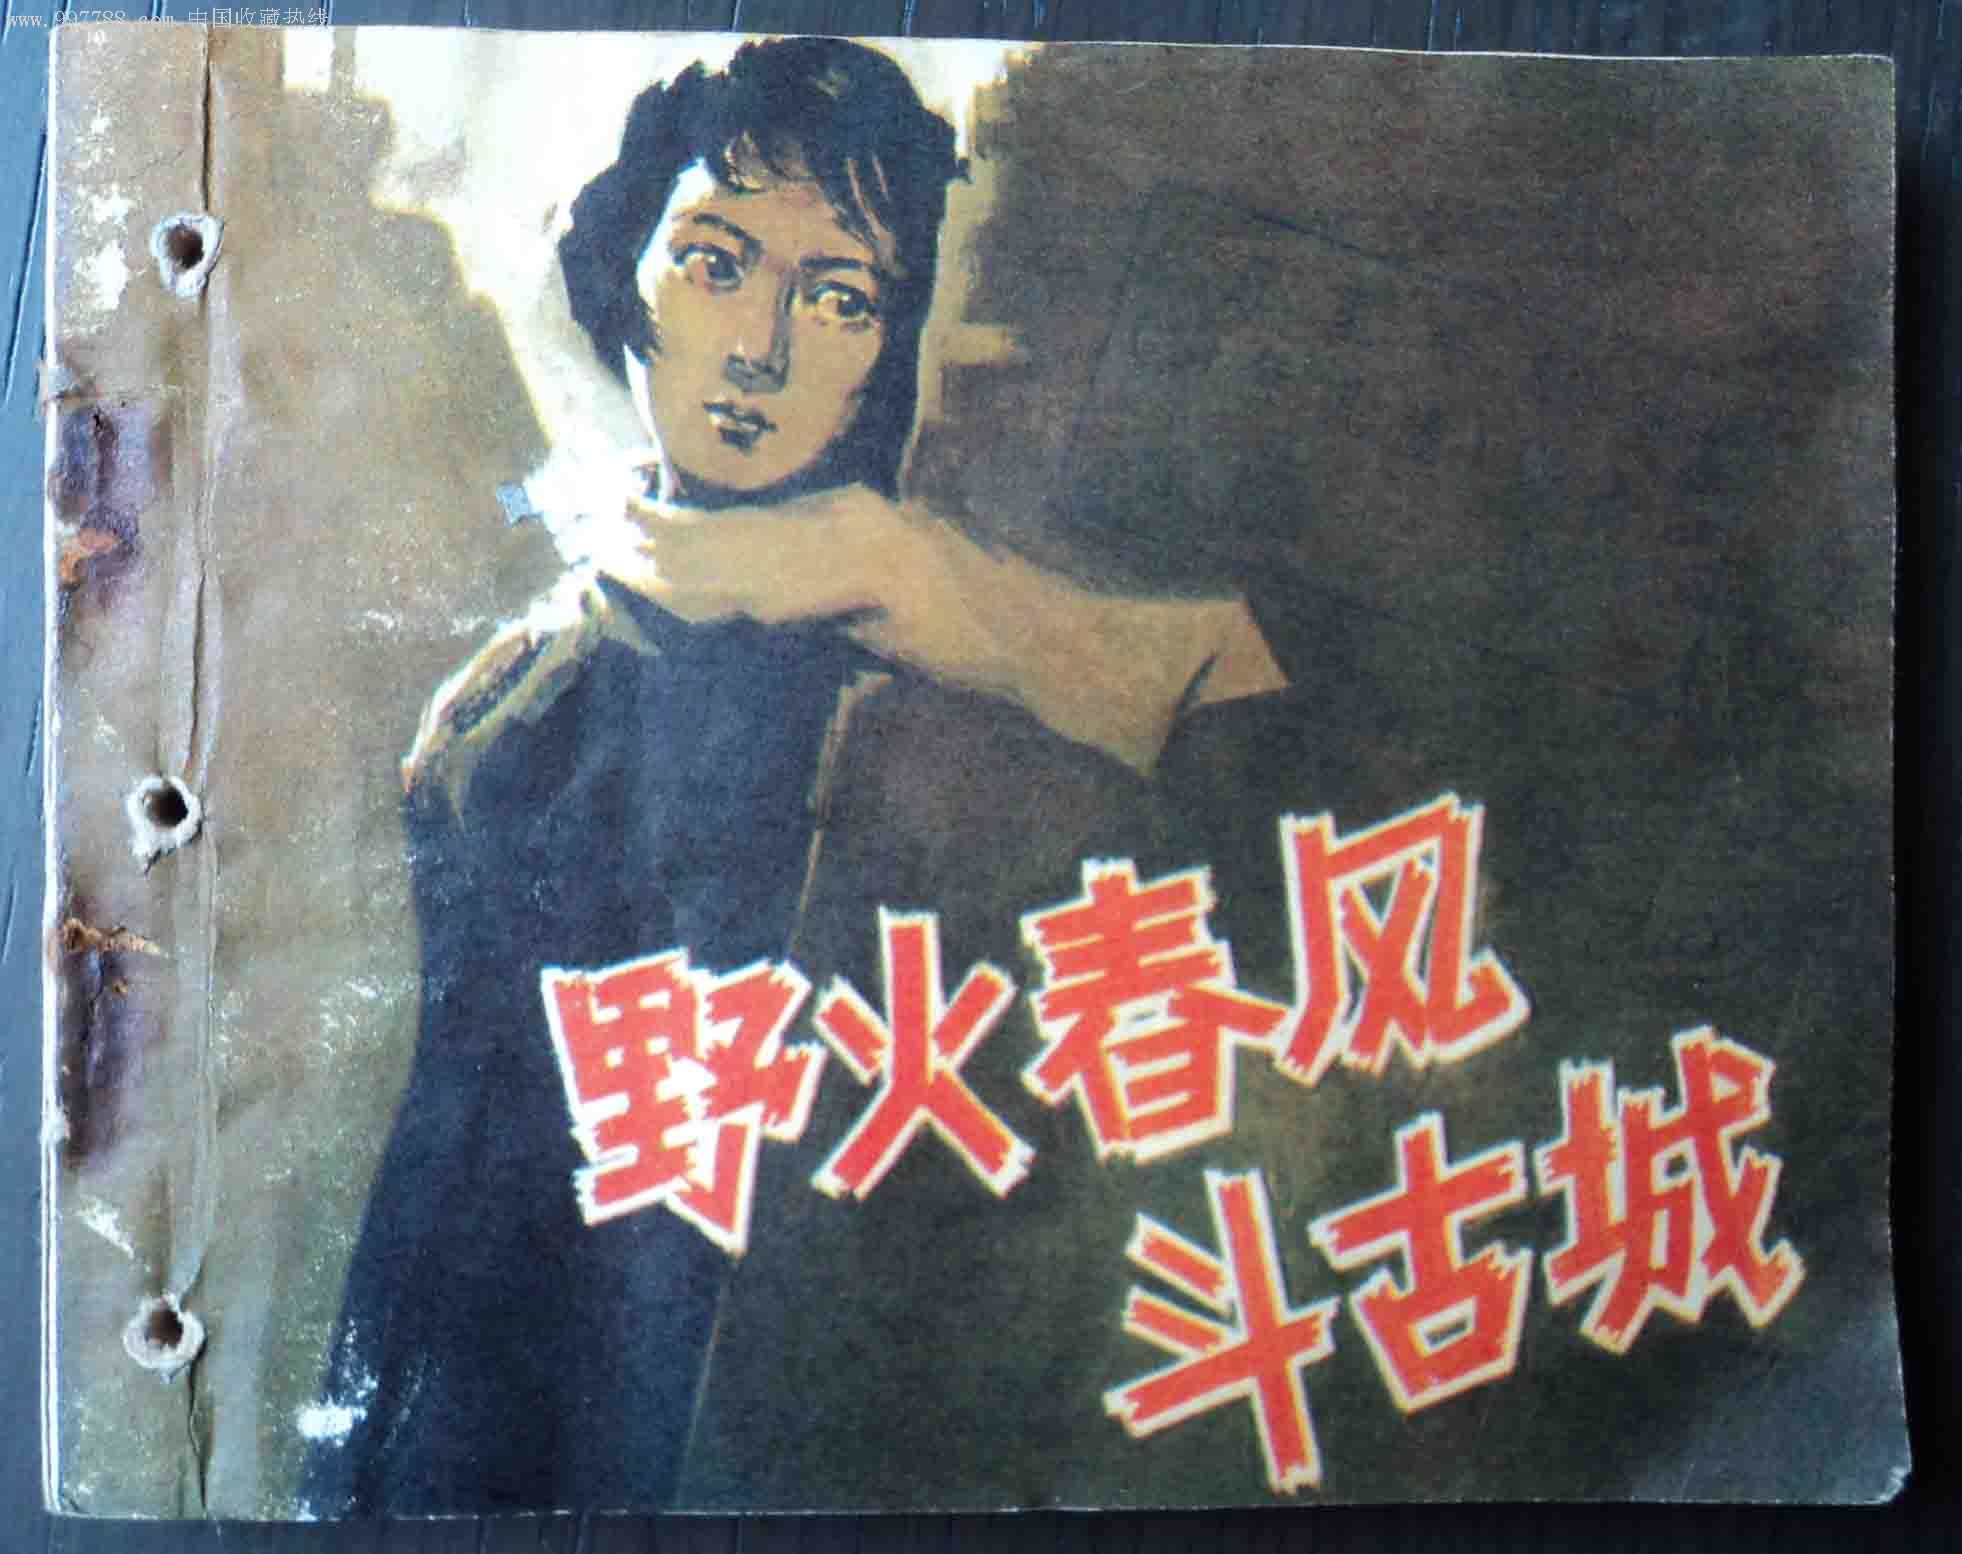 野火春風斗古城(1963年嚴寄洲執導的電影)